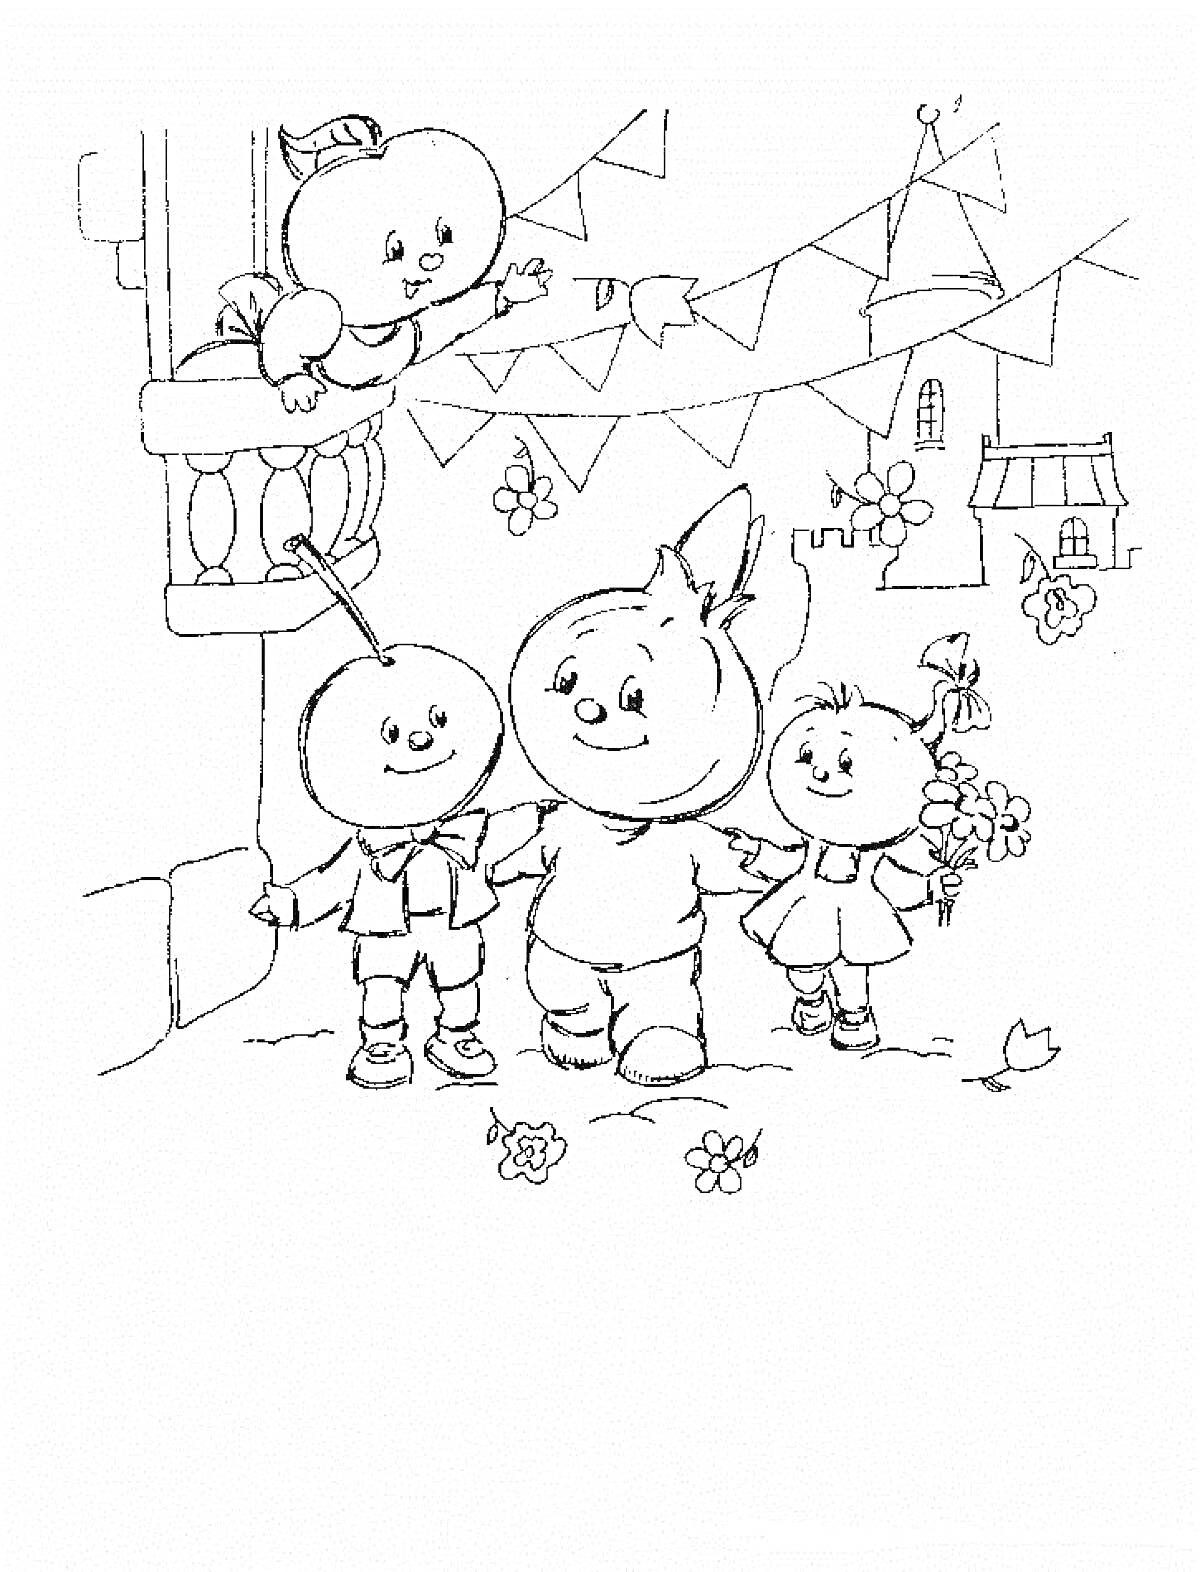 Чиполлино и друзья на городской улице, один персонаж на балконе, гирлянды с флажками, цветы